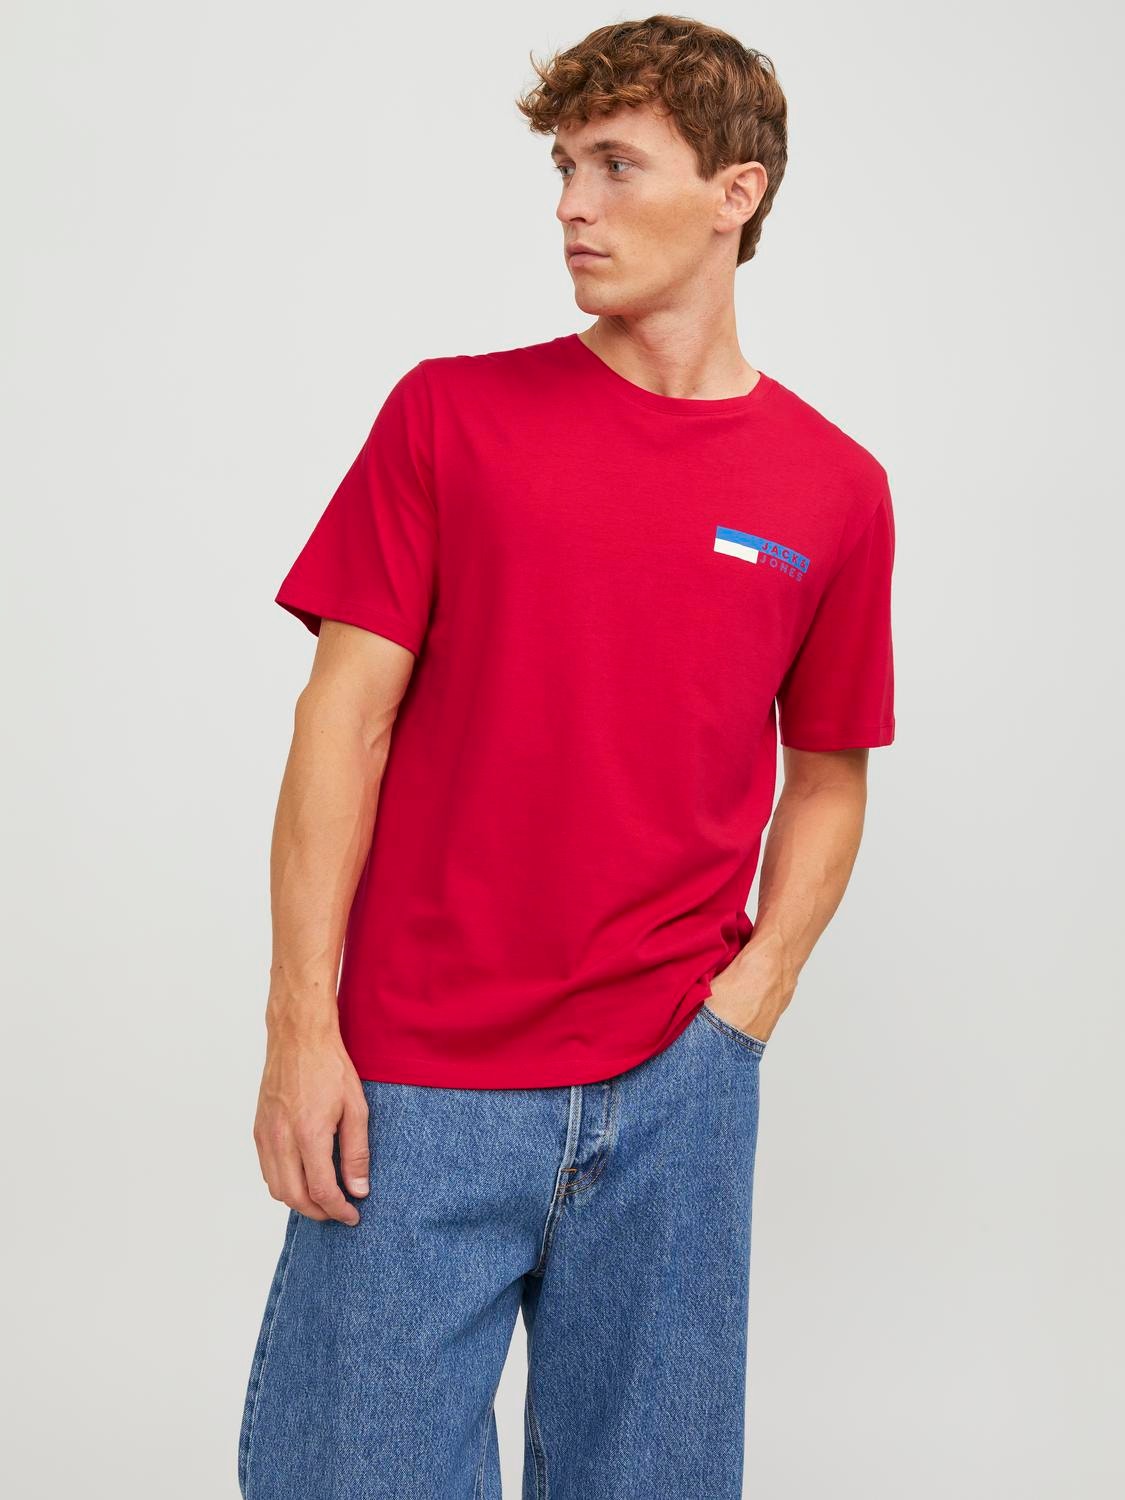 JACK & JONES Camiseta para hombre, 3 unidades, 6 unidades, 9 unidades,  cuello redondo, mezcla de algodón, multicolor, S: : Moda